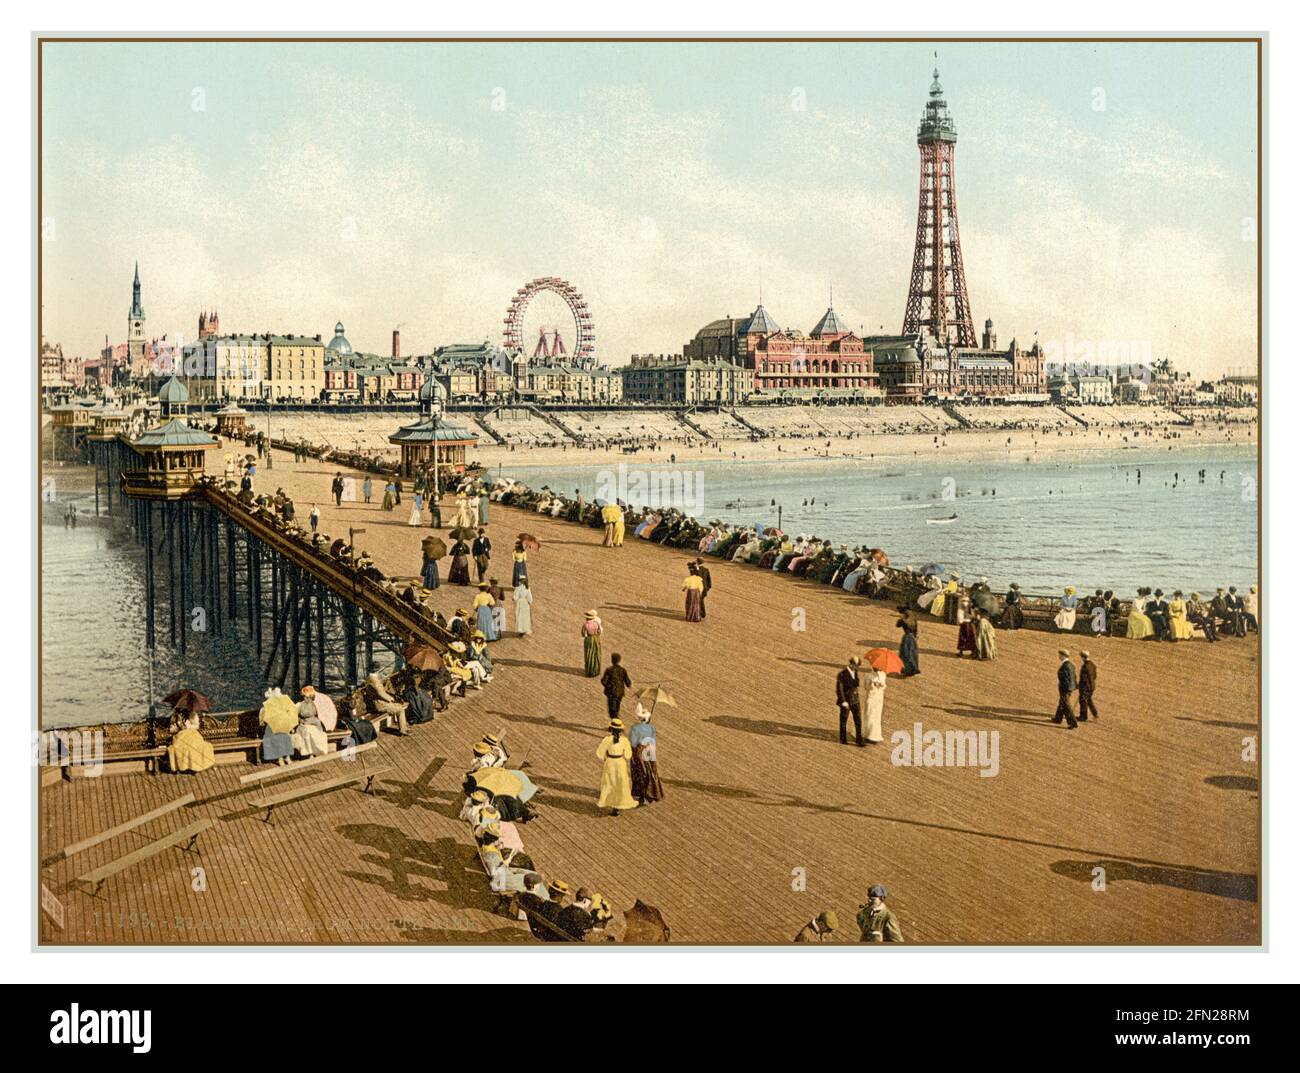 BLACKPOOL PERSONE VACANZA VINTAGE PHOTOCHROM 1890's Blackpool Vintage retro Chromolith Photochrom Pleasure Beach dal molo nord con la Blackpool Tower dietro Gran Bretagna Regno Unito Foto Stock